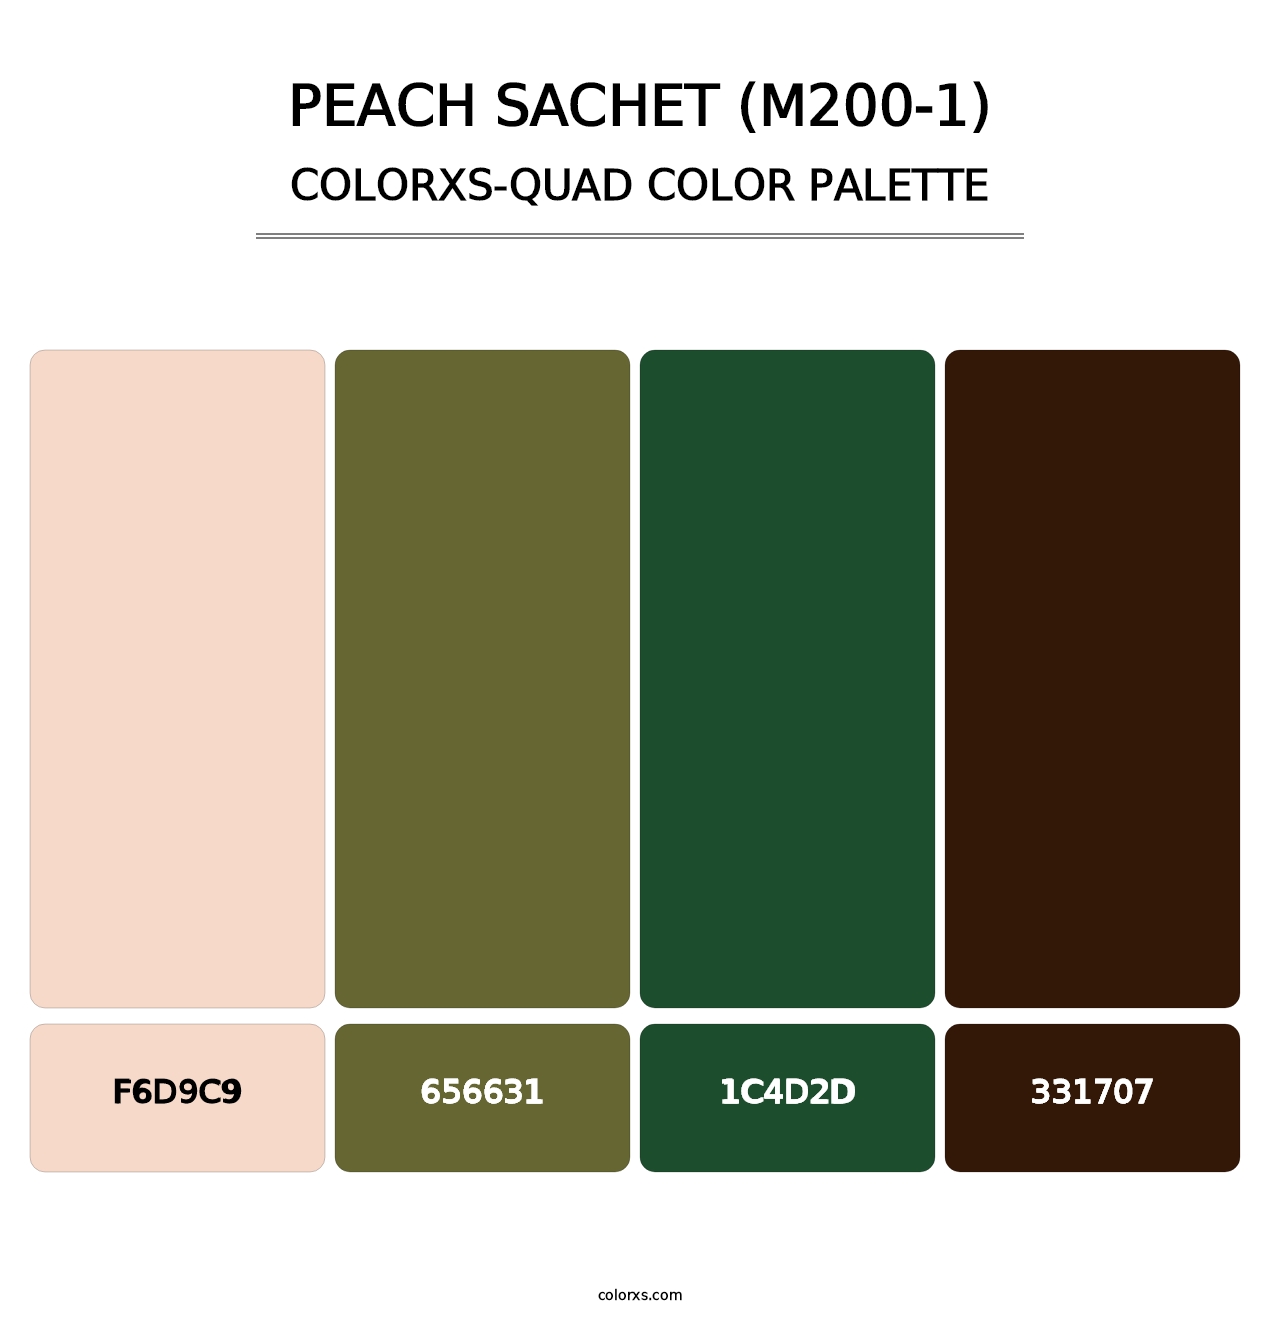 Peach Sachet (M200-1) - Colorxs Quad Palette